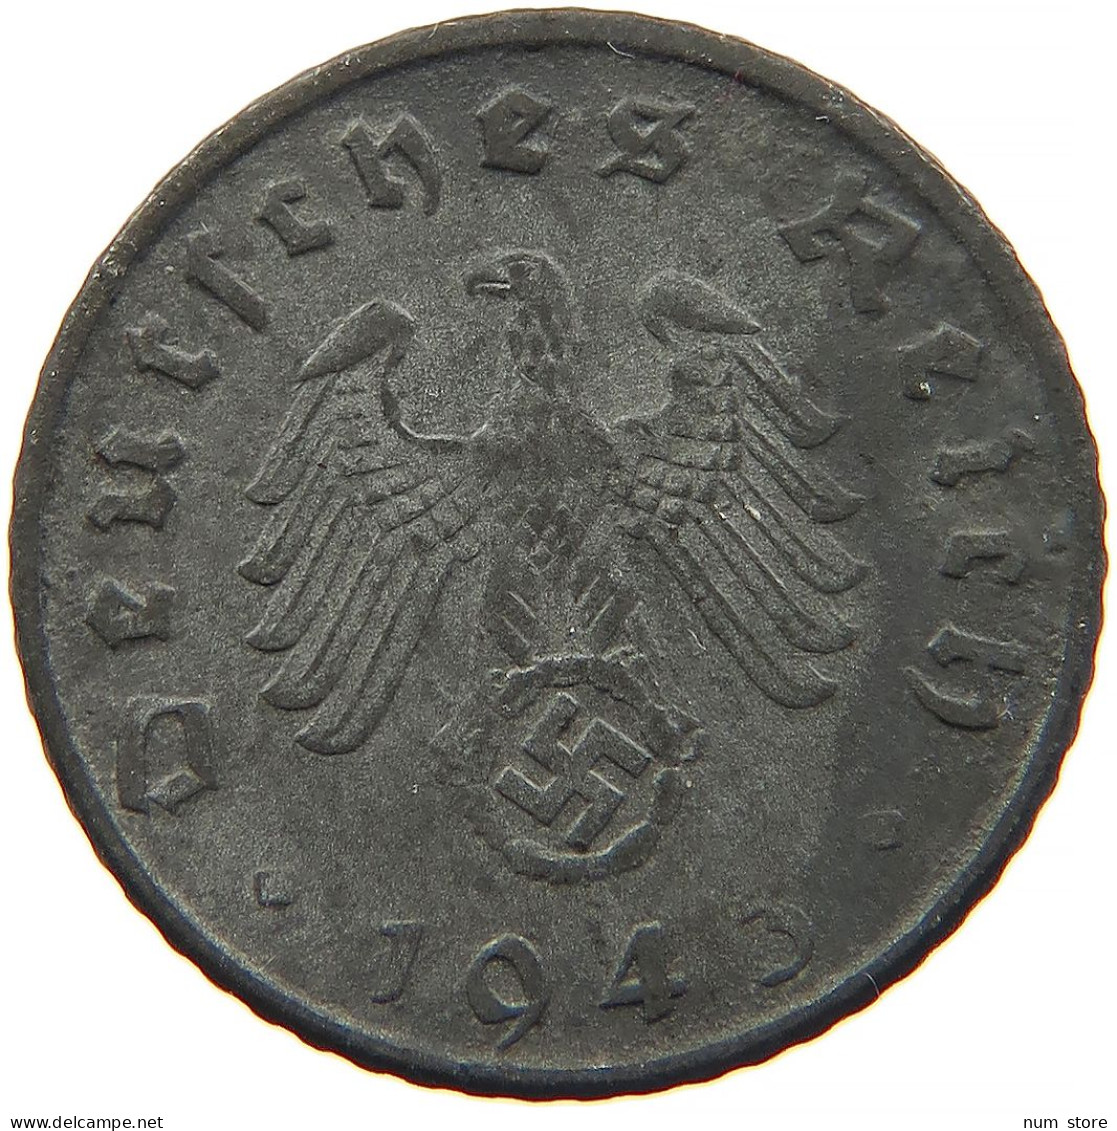 GERMANY 5 REICHSPFENNIG 1943 D #s091 0847 - 5 Reichspfennig